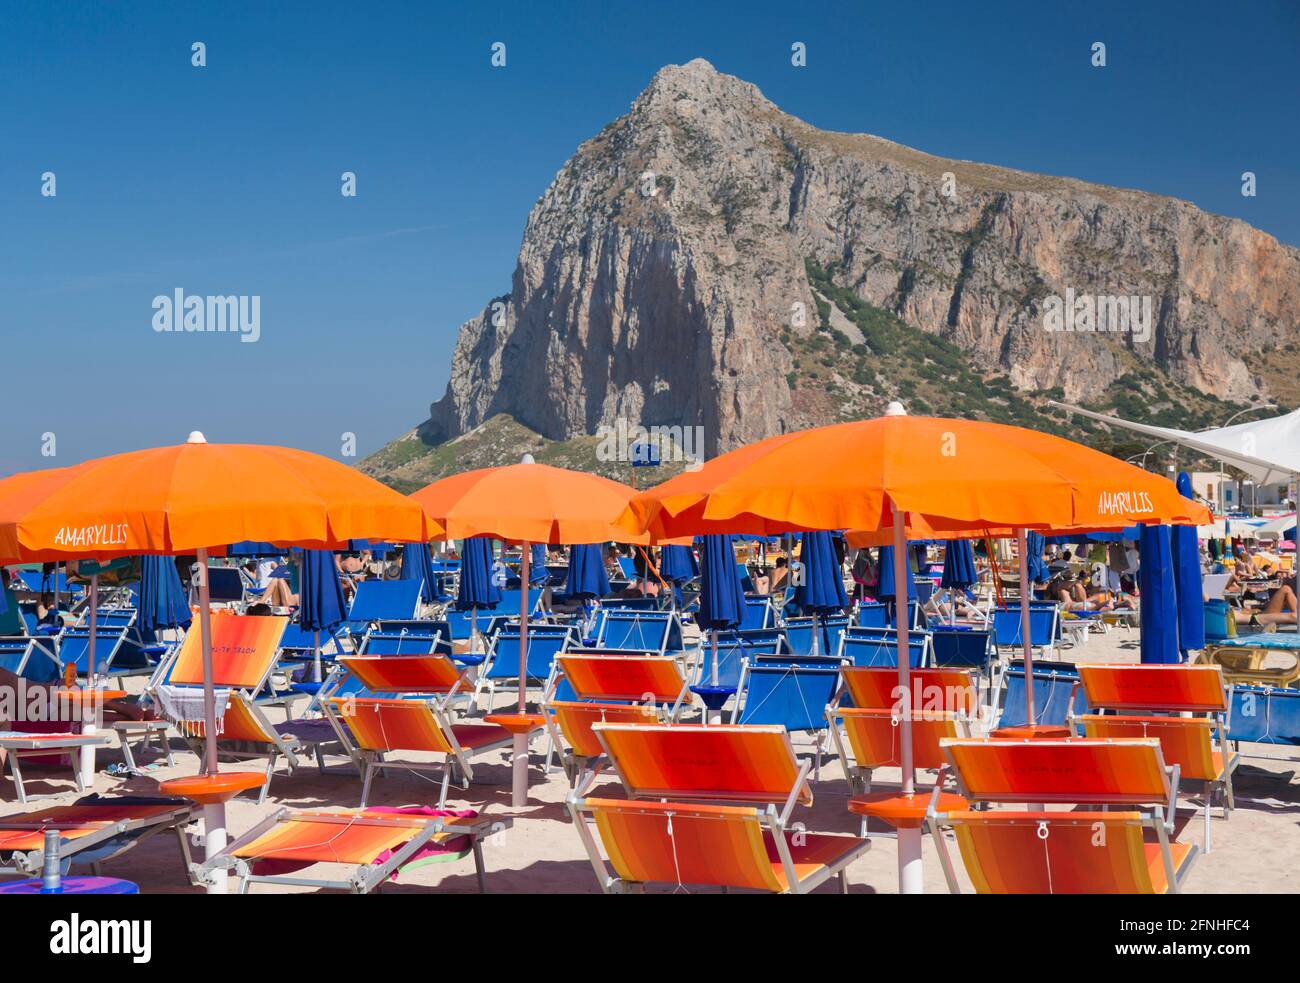 San Vito lo Capo, Trapani, Sicilia, Italia. Splendidi mobili da spiaggia sulla spiaggia affollata, l'imponente parete nord del Monte Monaco sullo sfondo. Foto Stock